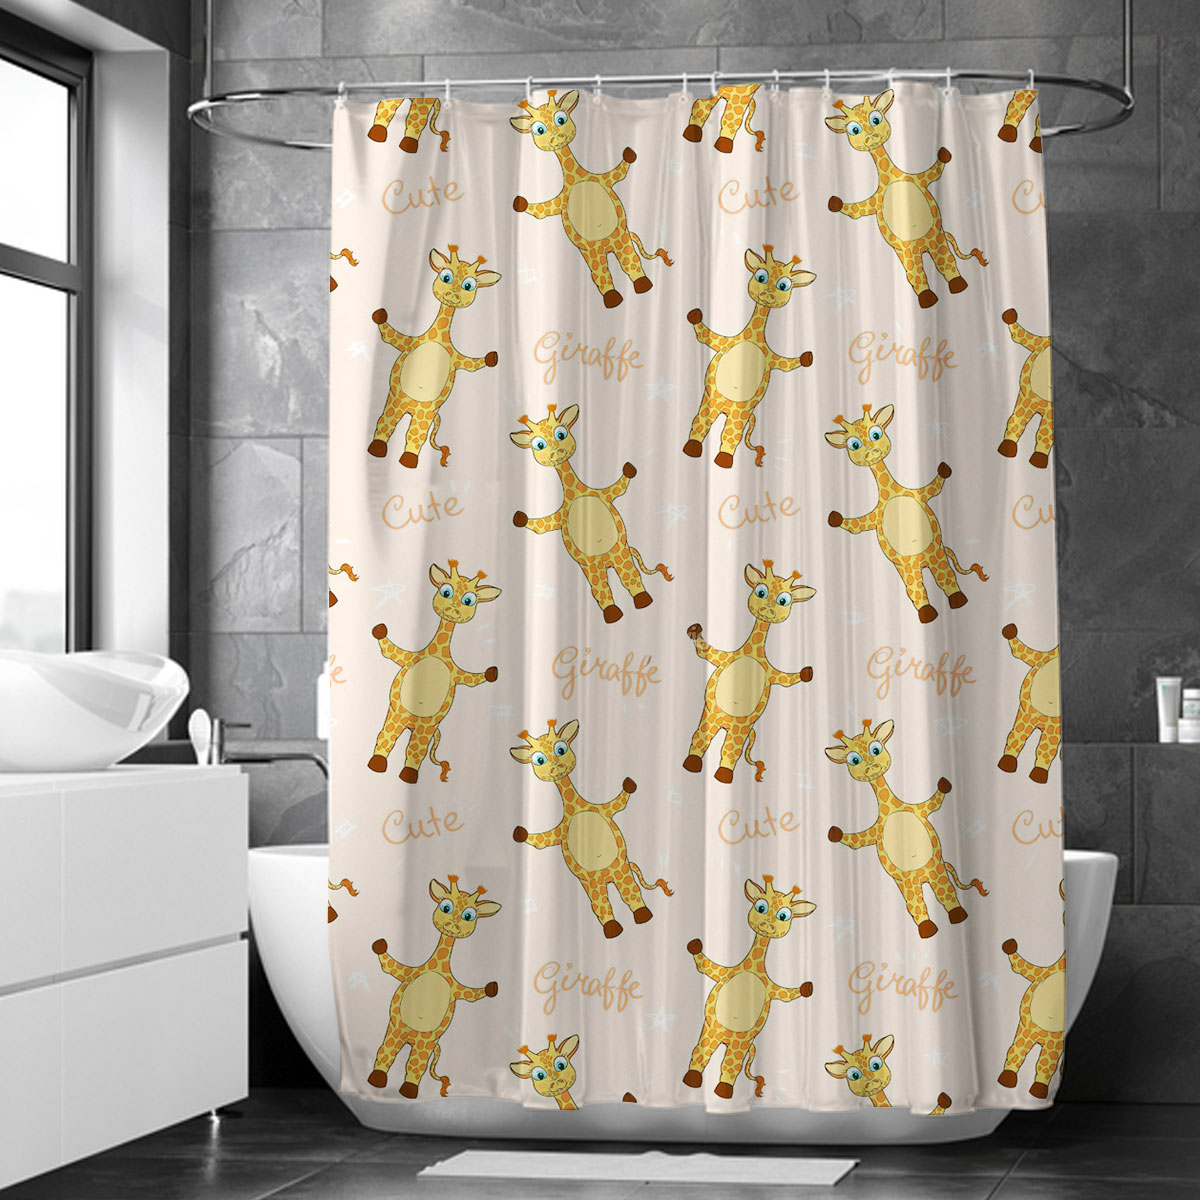 Cute Giraffe Shower Curtain 6